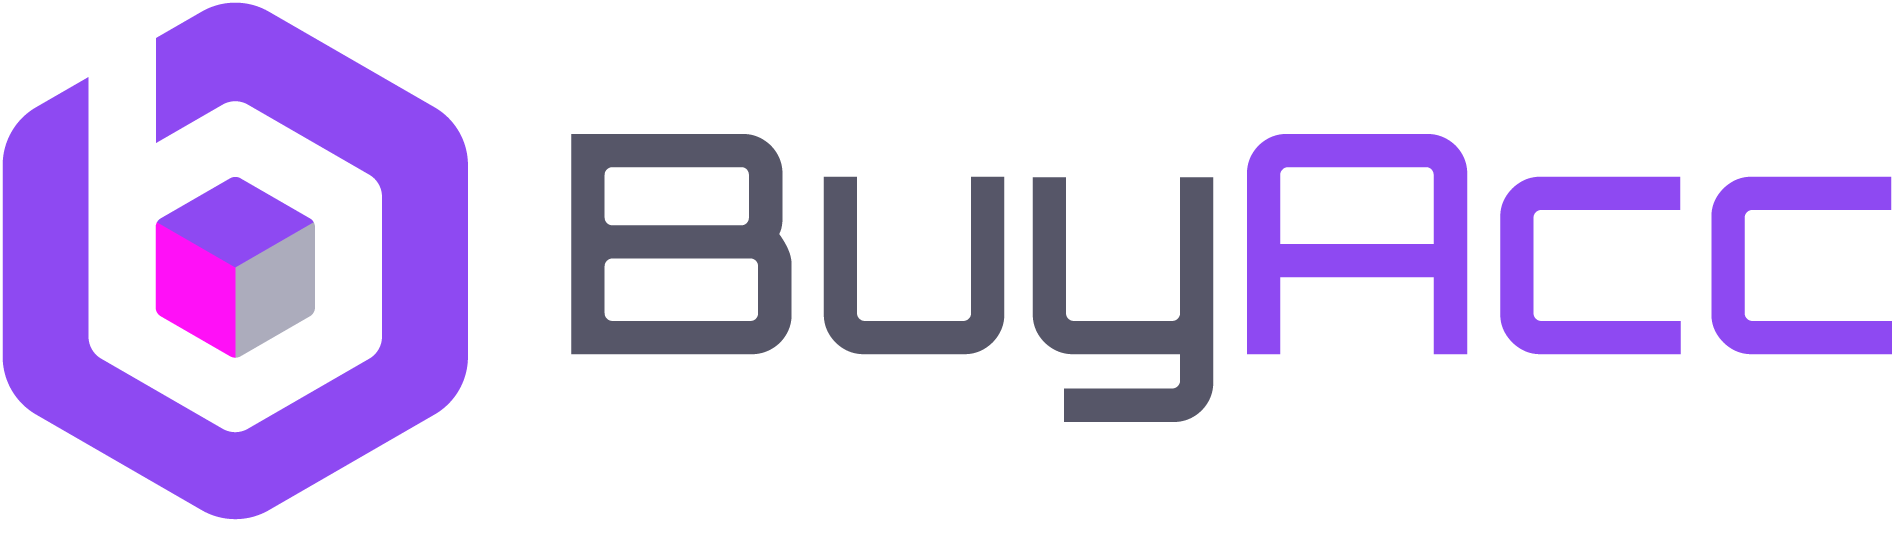 فروشگاه BuyAcc | مرجع خرید اشتراک با قیمت ارزان